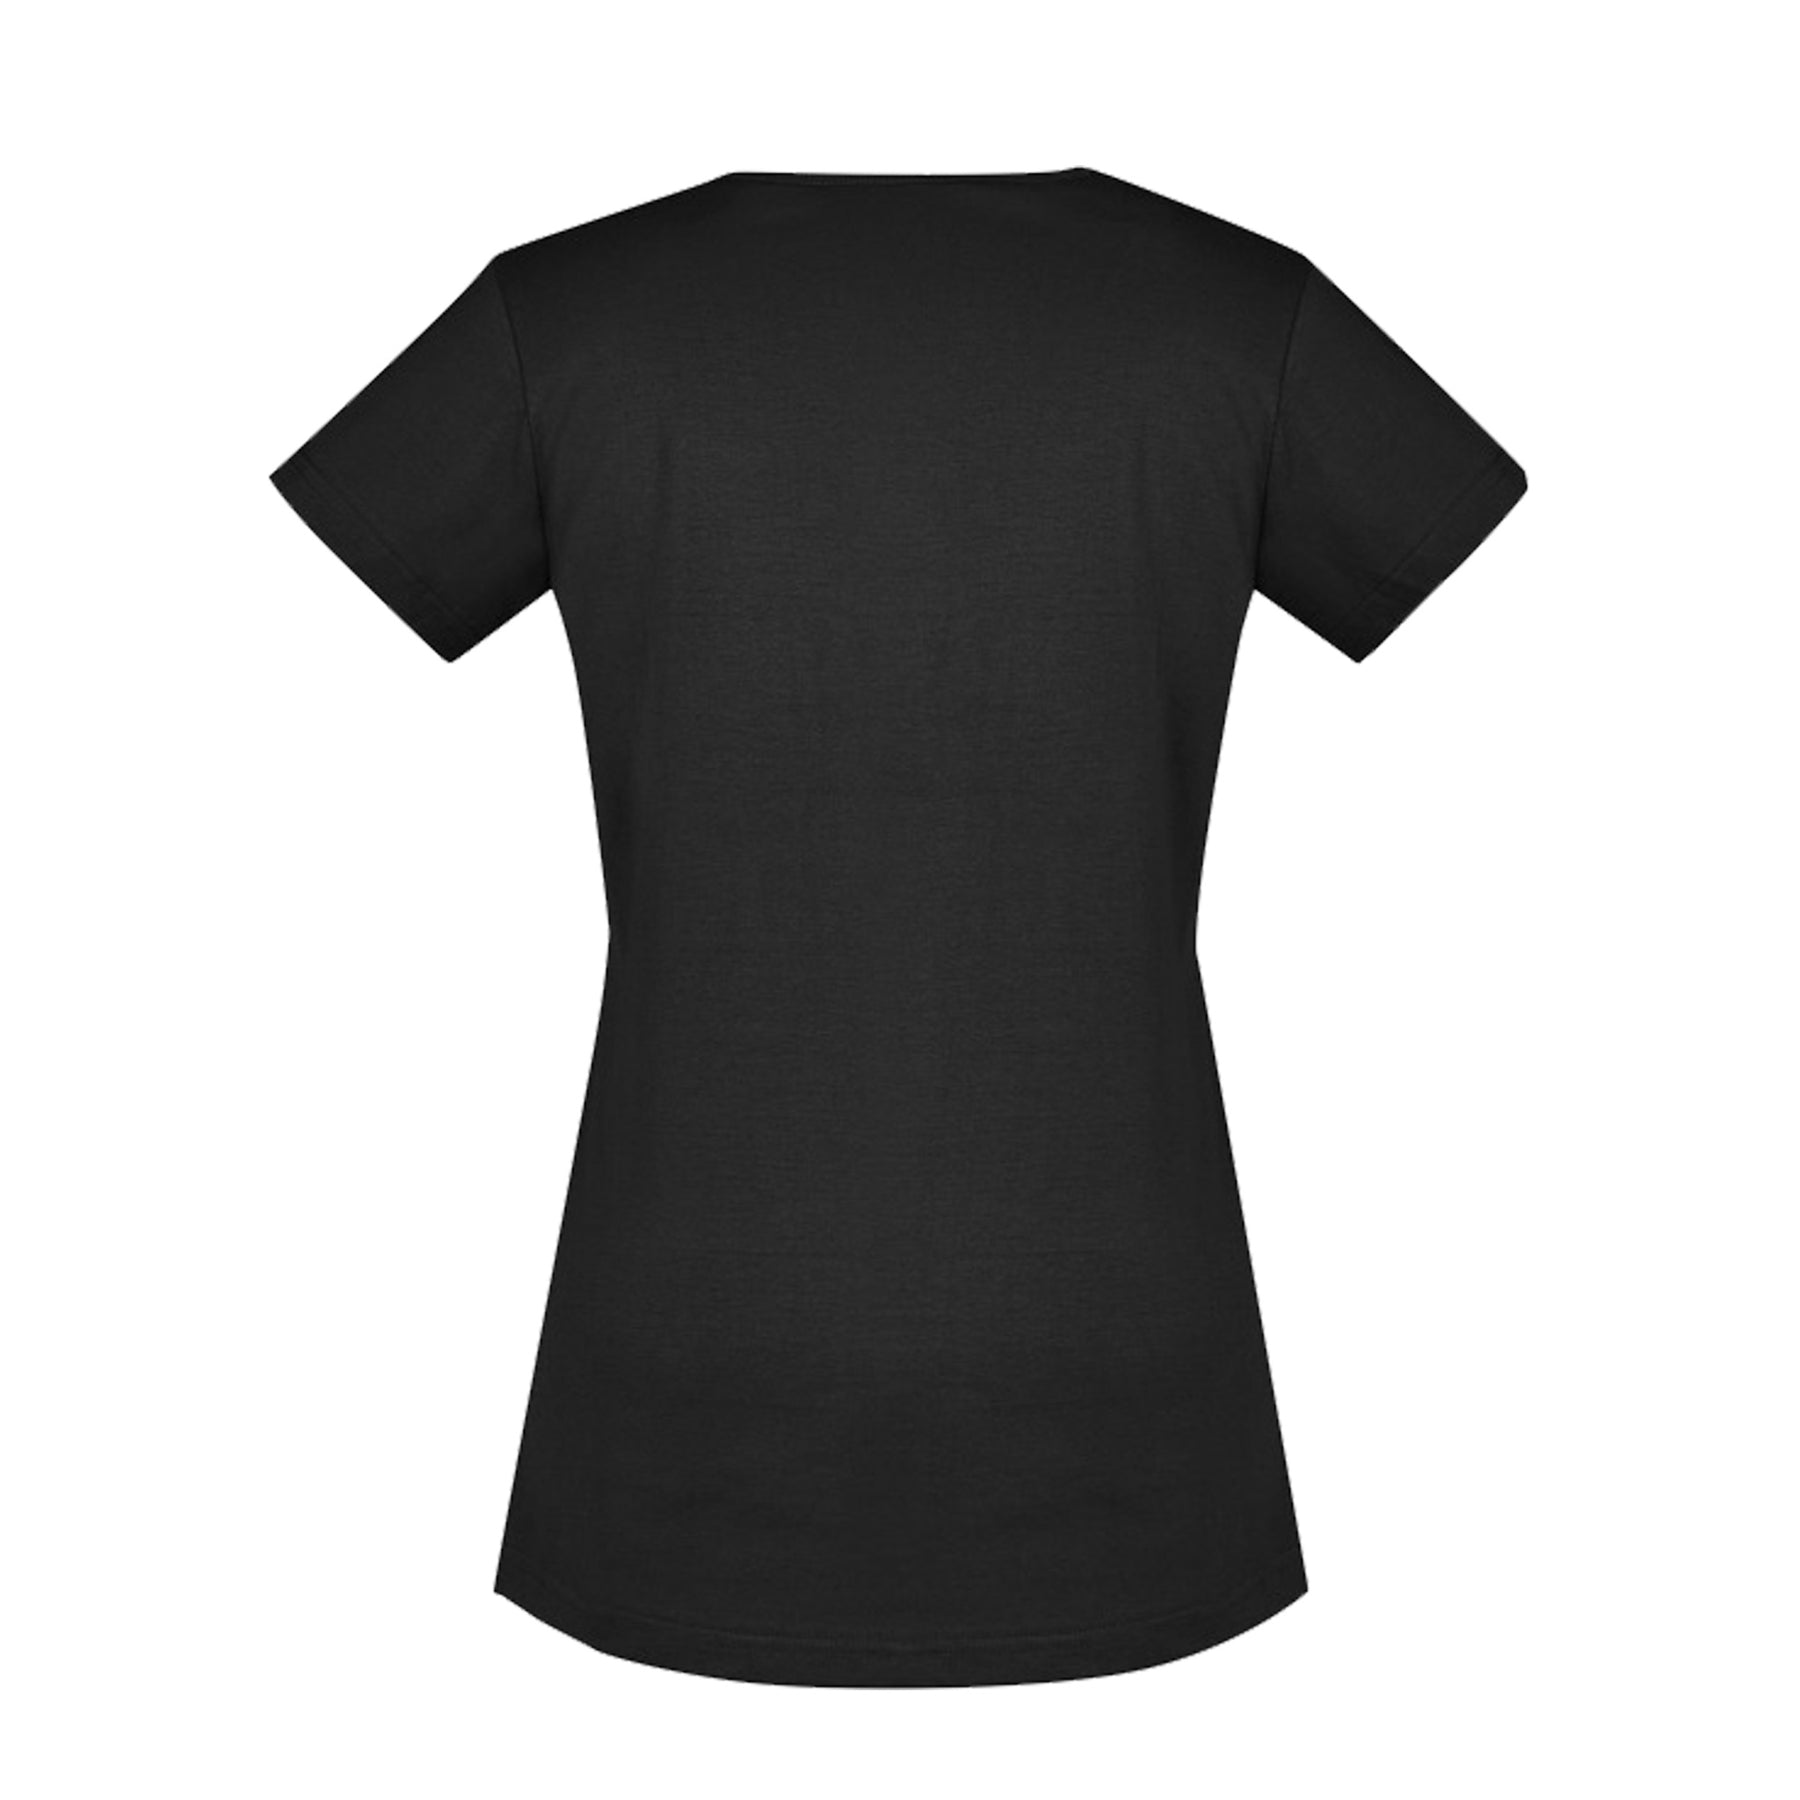 syzmik ladies streetwork tee shirt in black